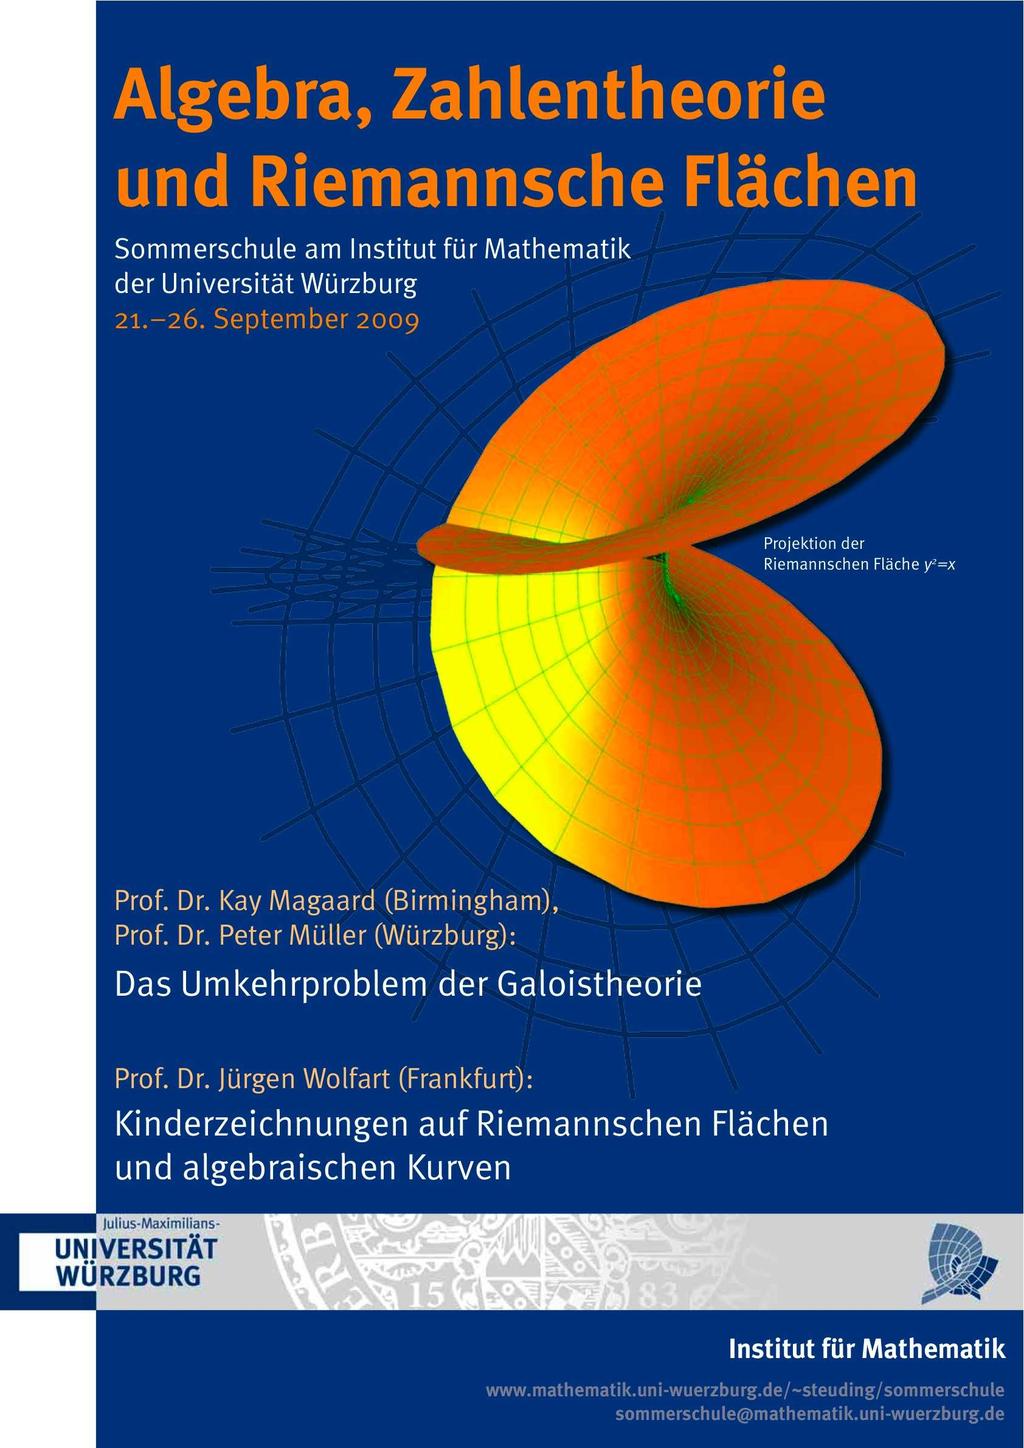 Algebra, Zahlentheorie und Riemannsche Flächen Diese Sommerschule findet vom 21. bis zum 26. September am Institut der Universität Würzburg statt und wird mit Teilen der Studiengebühren finanziert.